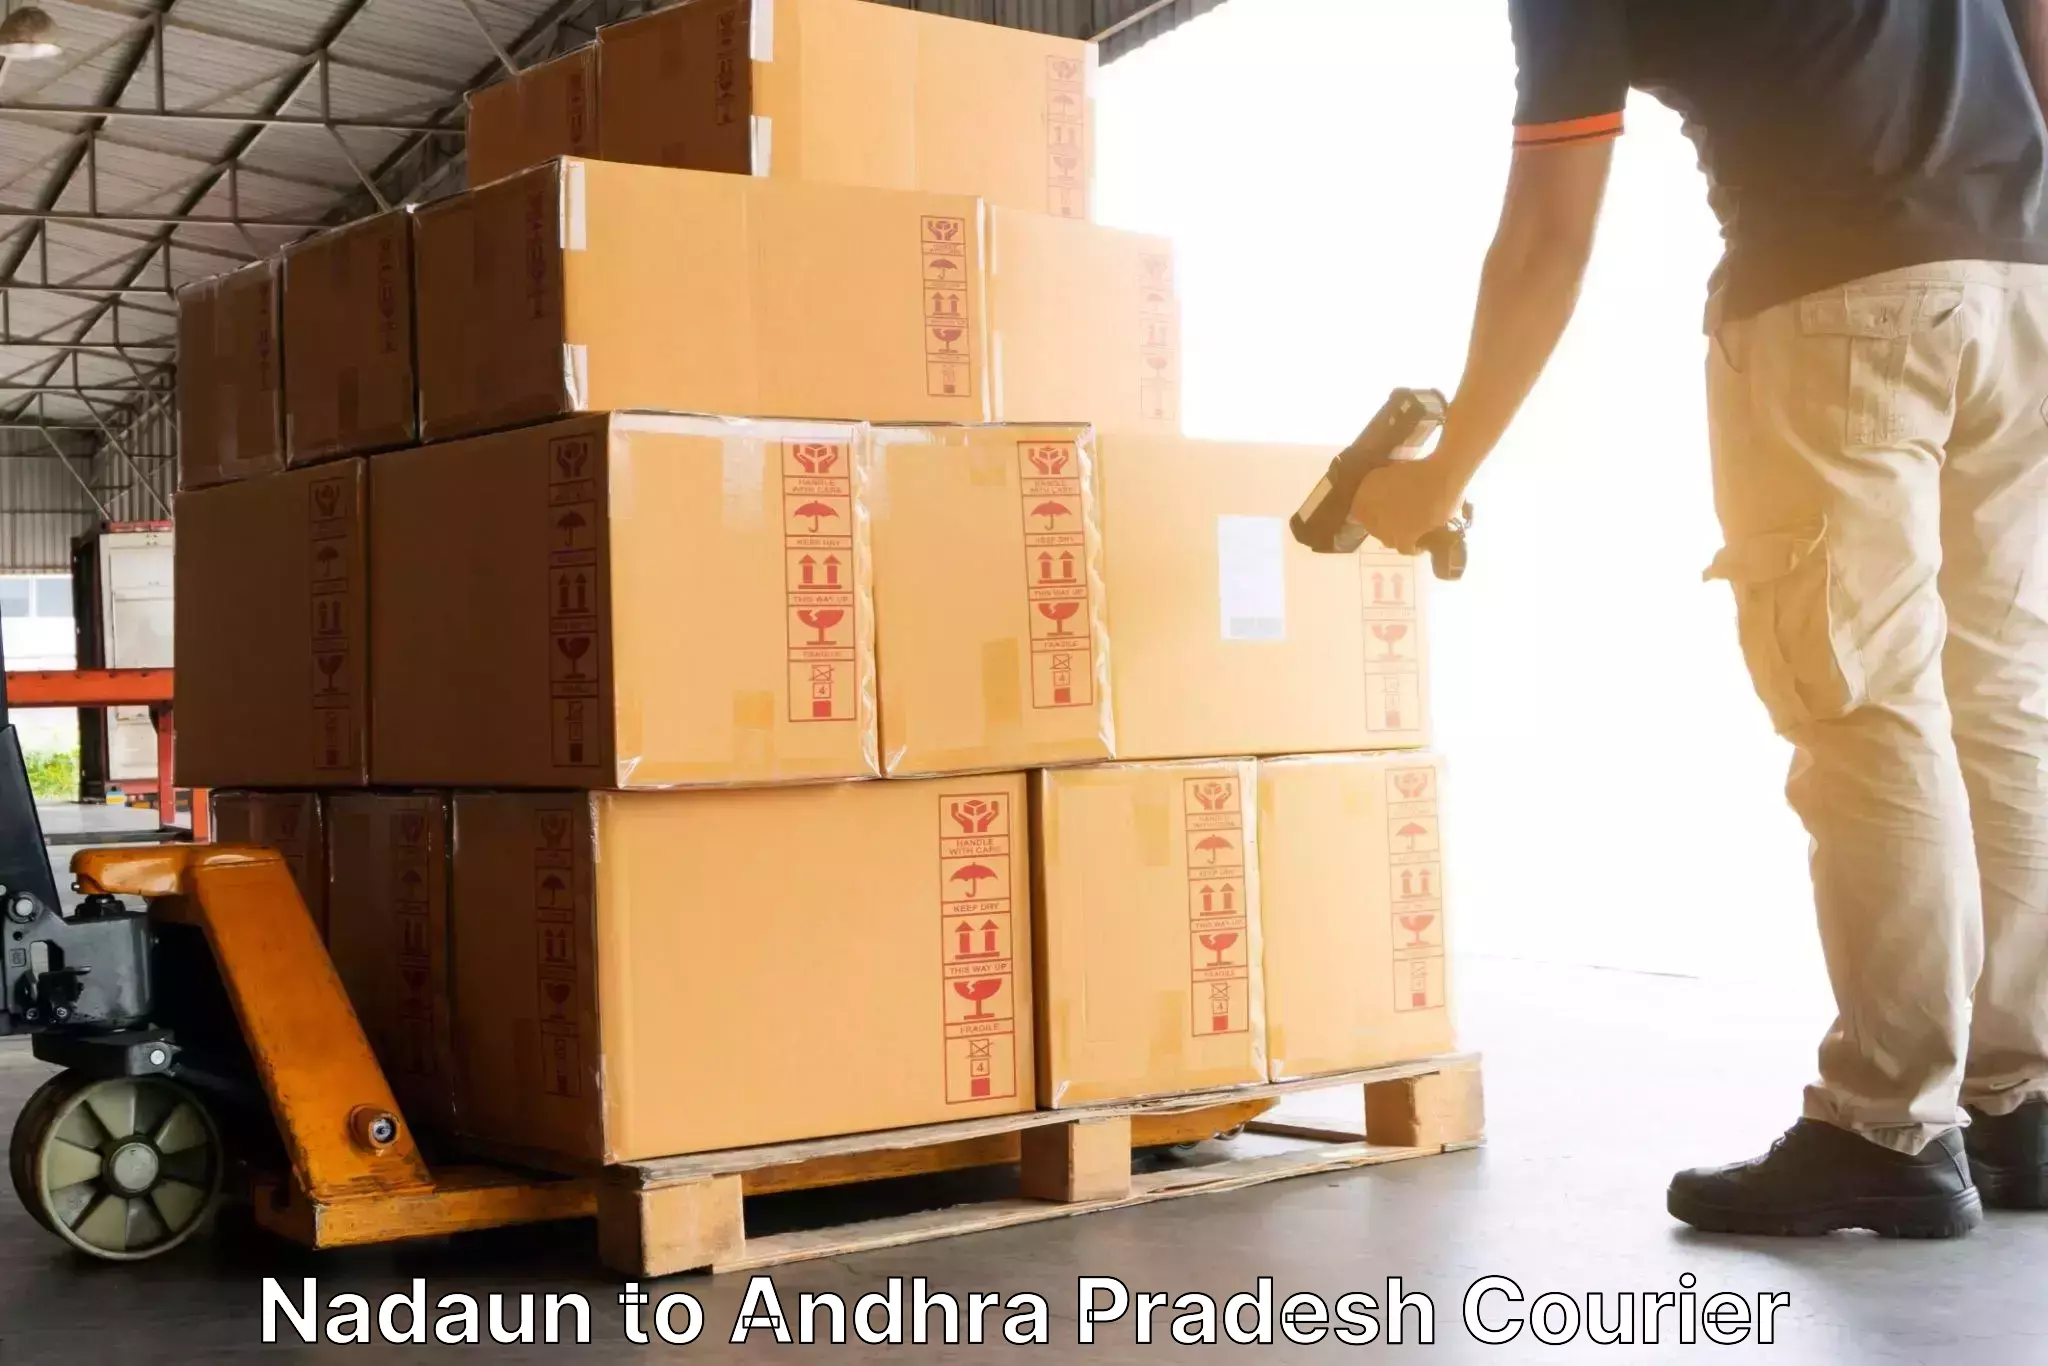 Business shipping needs Nadaun to Kalyandurg